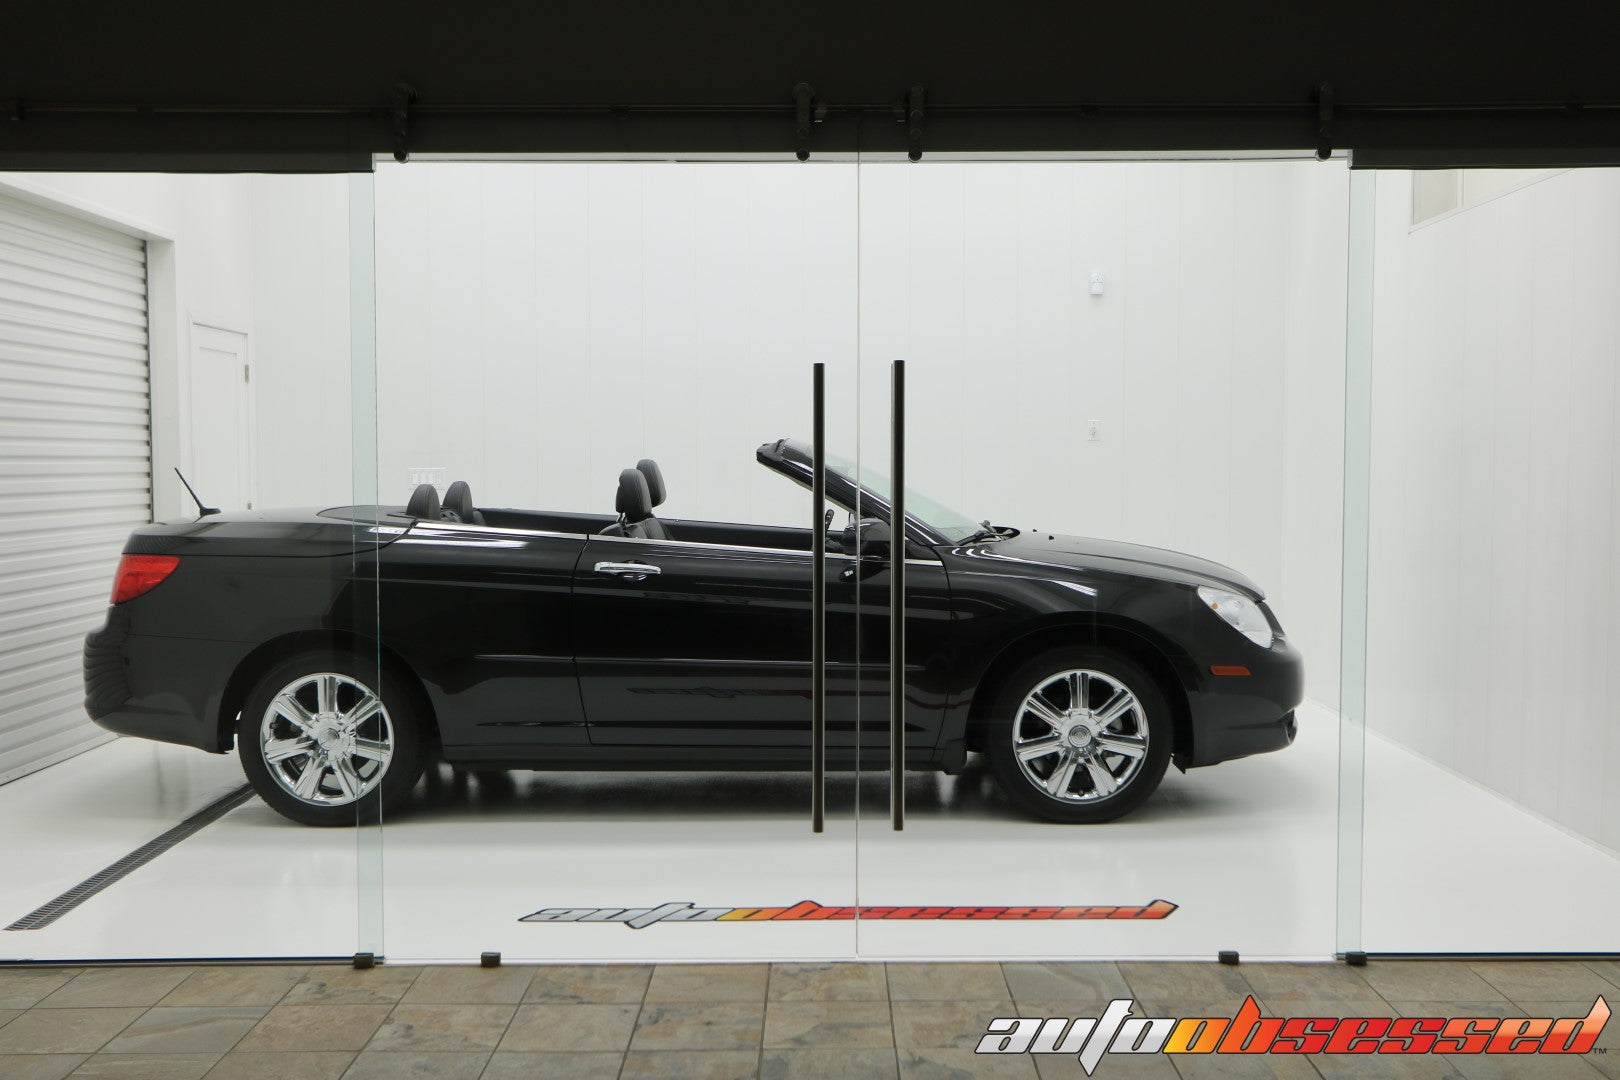 2009 Chrysler Sebring Car Detailing - Auto Obsessed